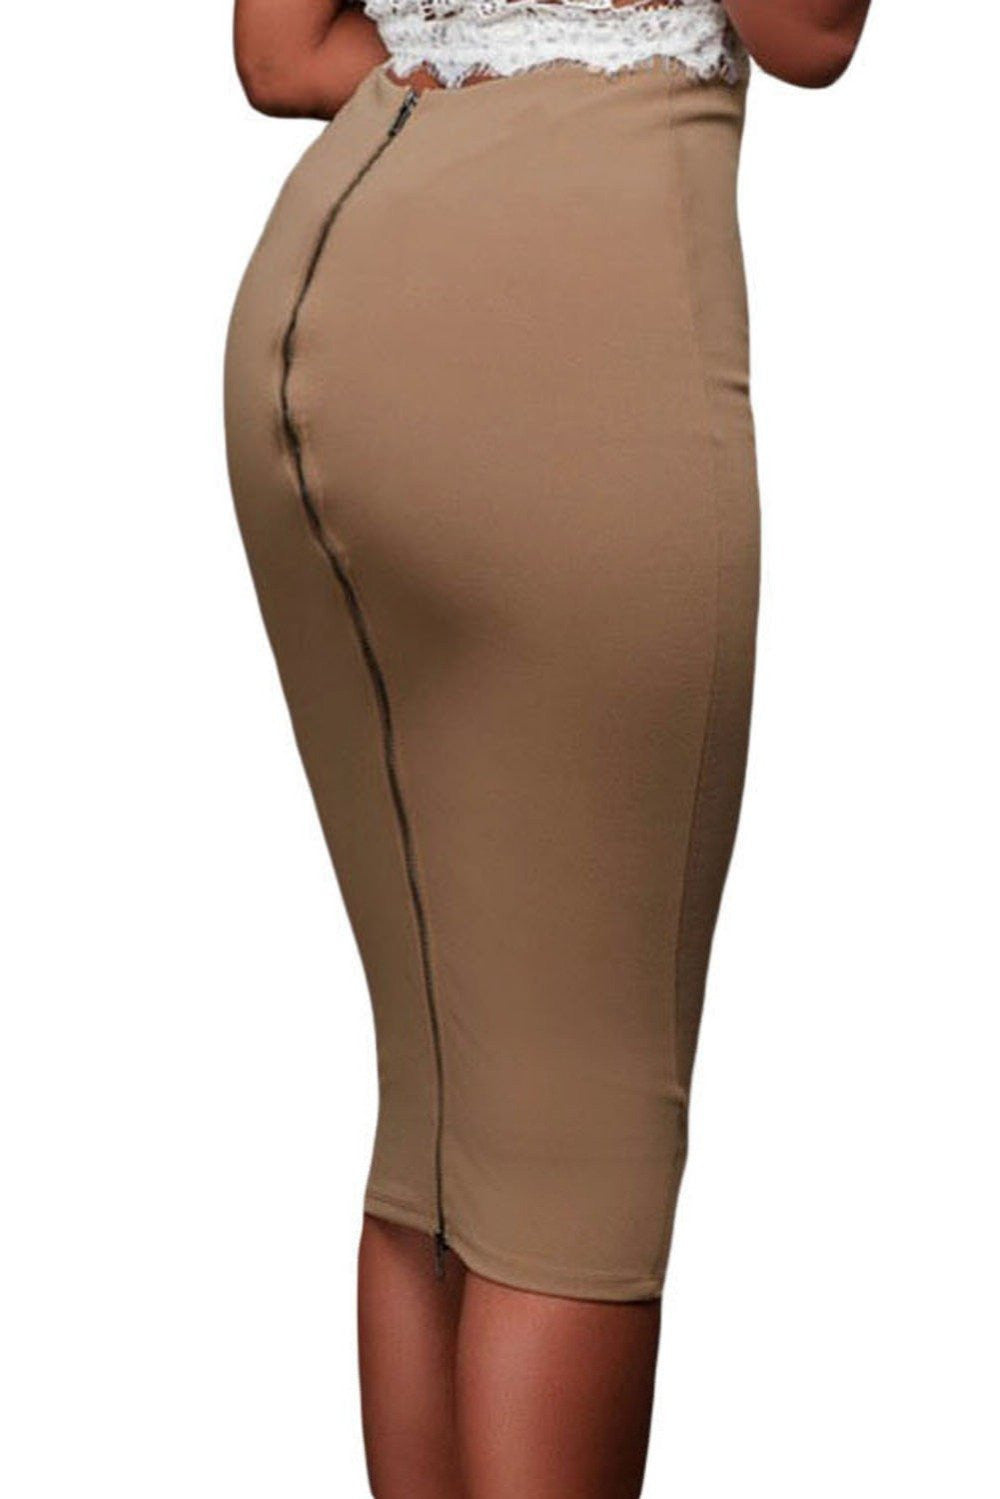 ladies skirt fashion skirt For OL Women Super Sleek Zipped Bodycon Skirt